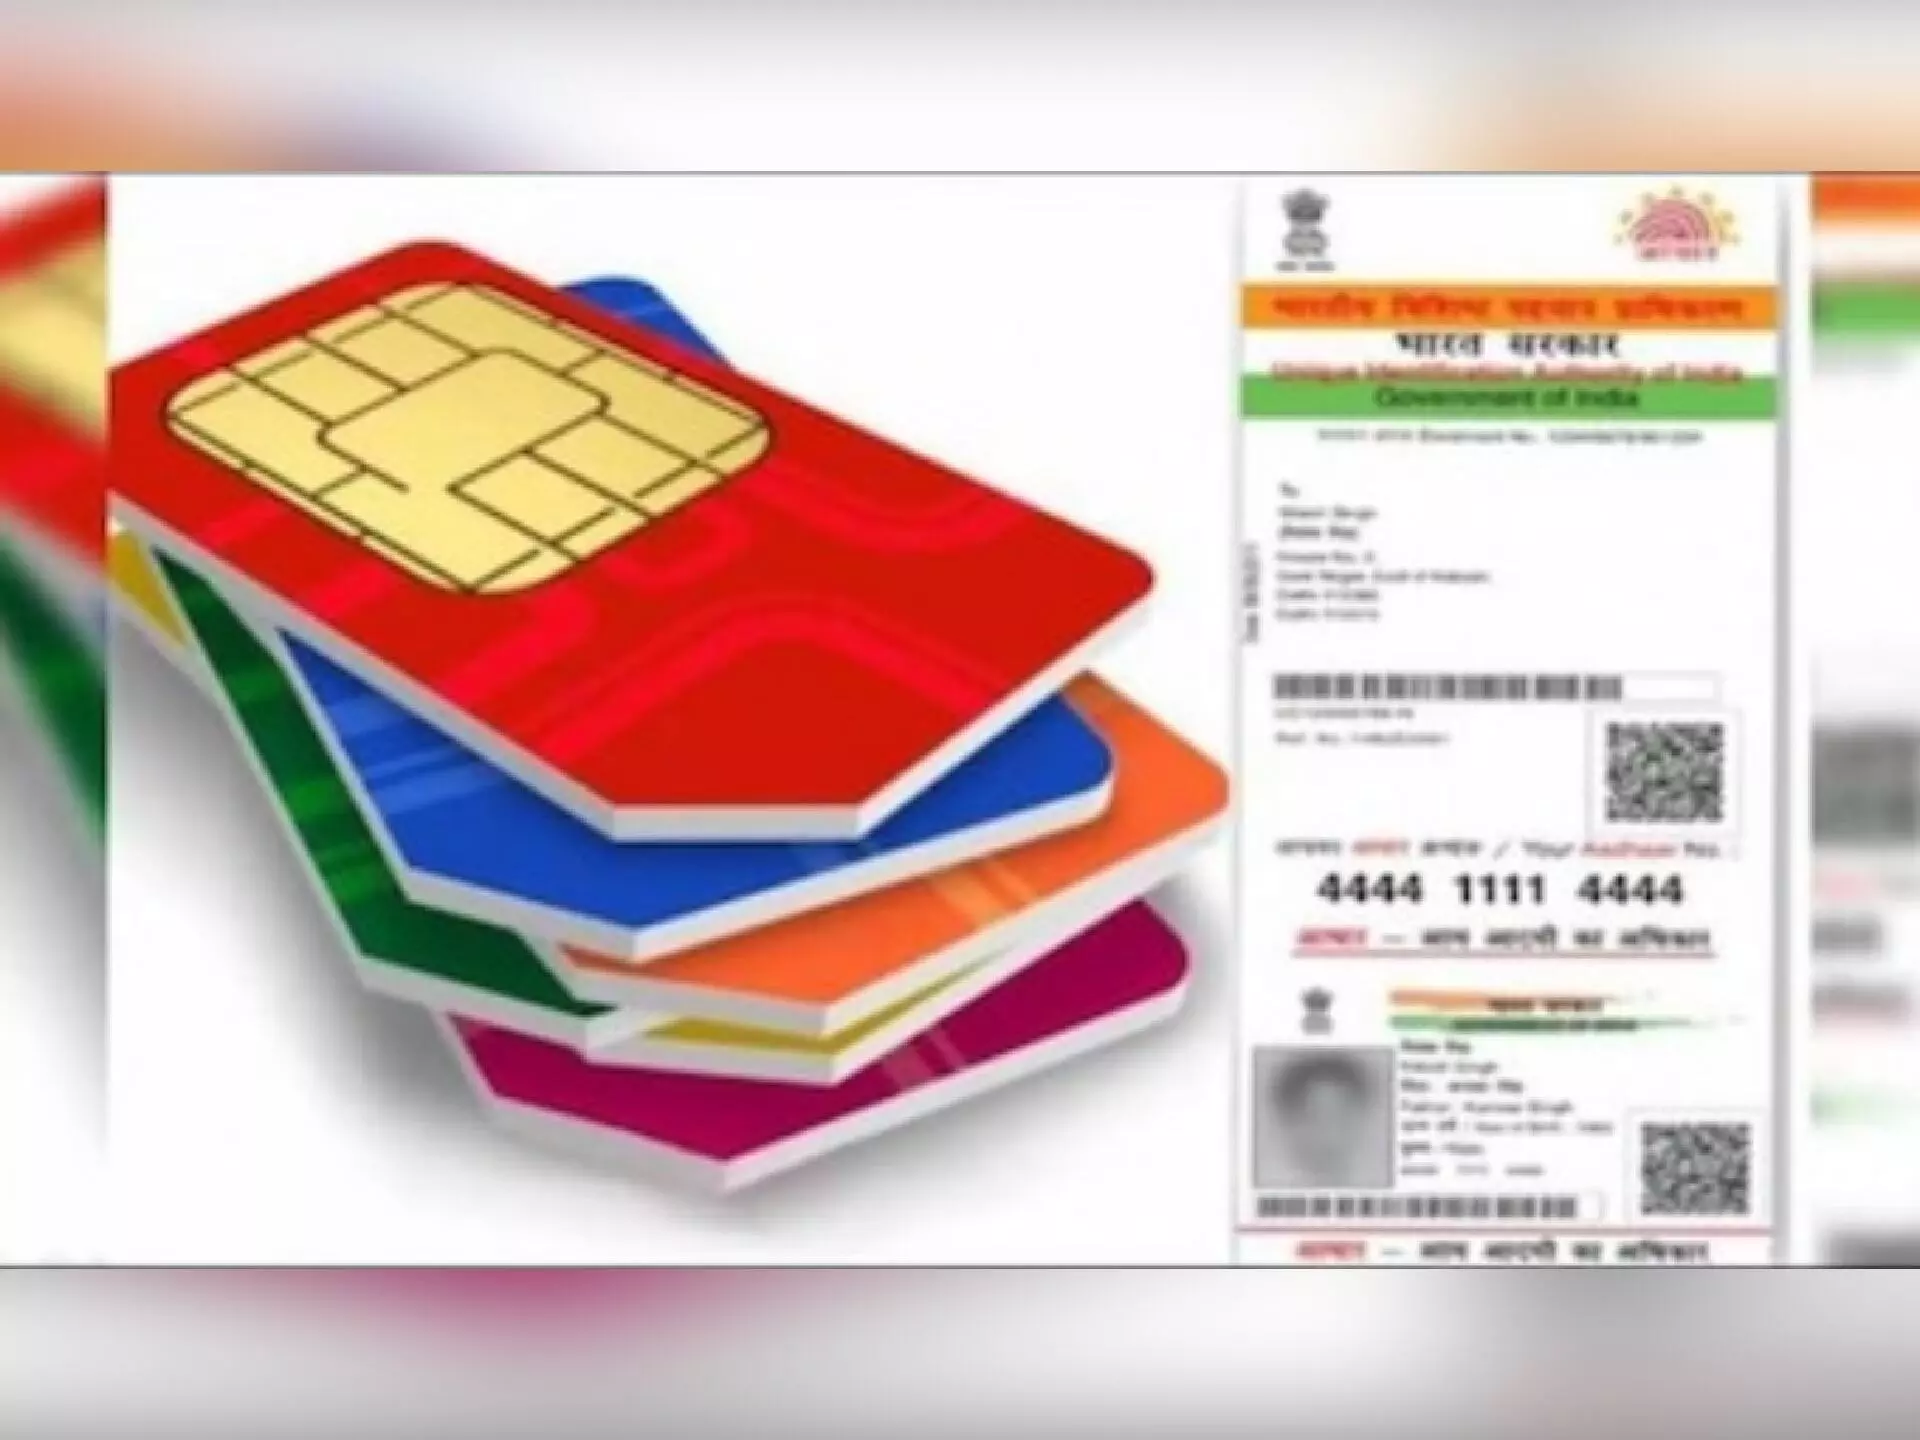 आज से Aadhaar Card-Sim Card को लेकर लागू नए नियम, आधार में बदलाव के लिए देने होंगे पैसे